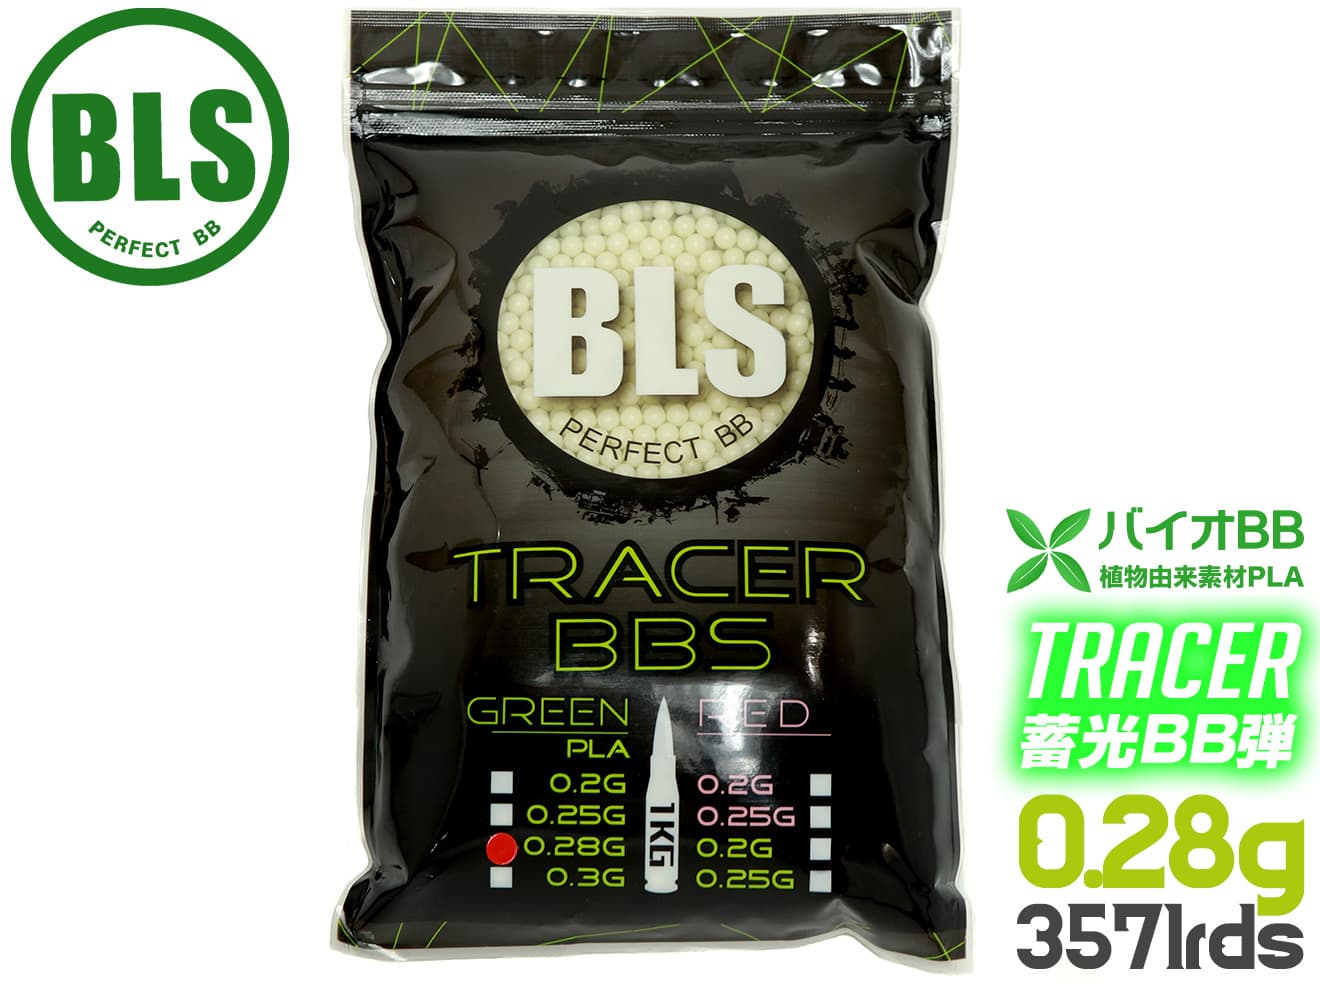 BLS 高品質PLA バイオトレーサーBB弾 0.28g 3571発 1kg グリーン グリーン 蓄光 高精度BB弾 夜戦 サバゲ 植物由来樹脂 高精度5.95mm±0.01